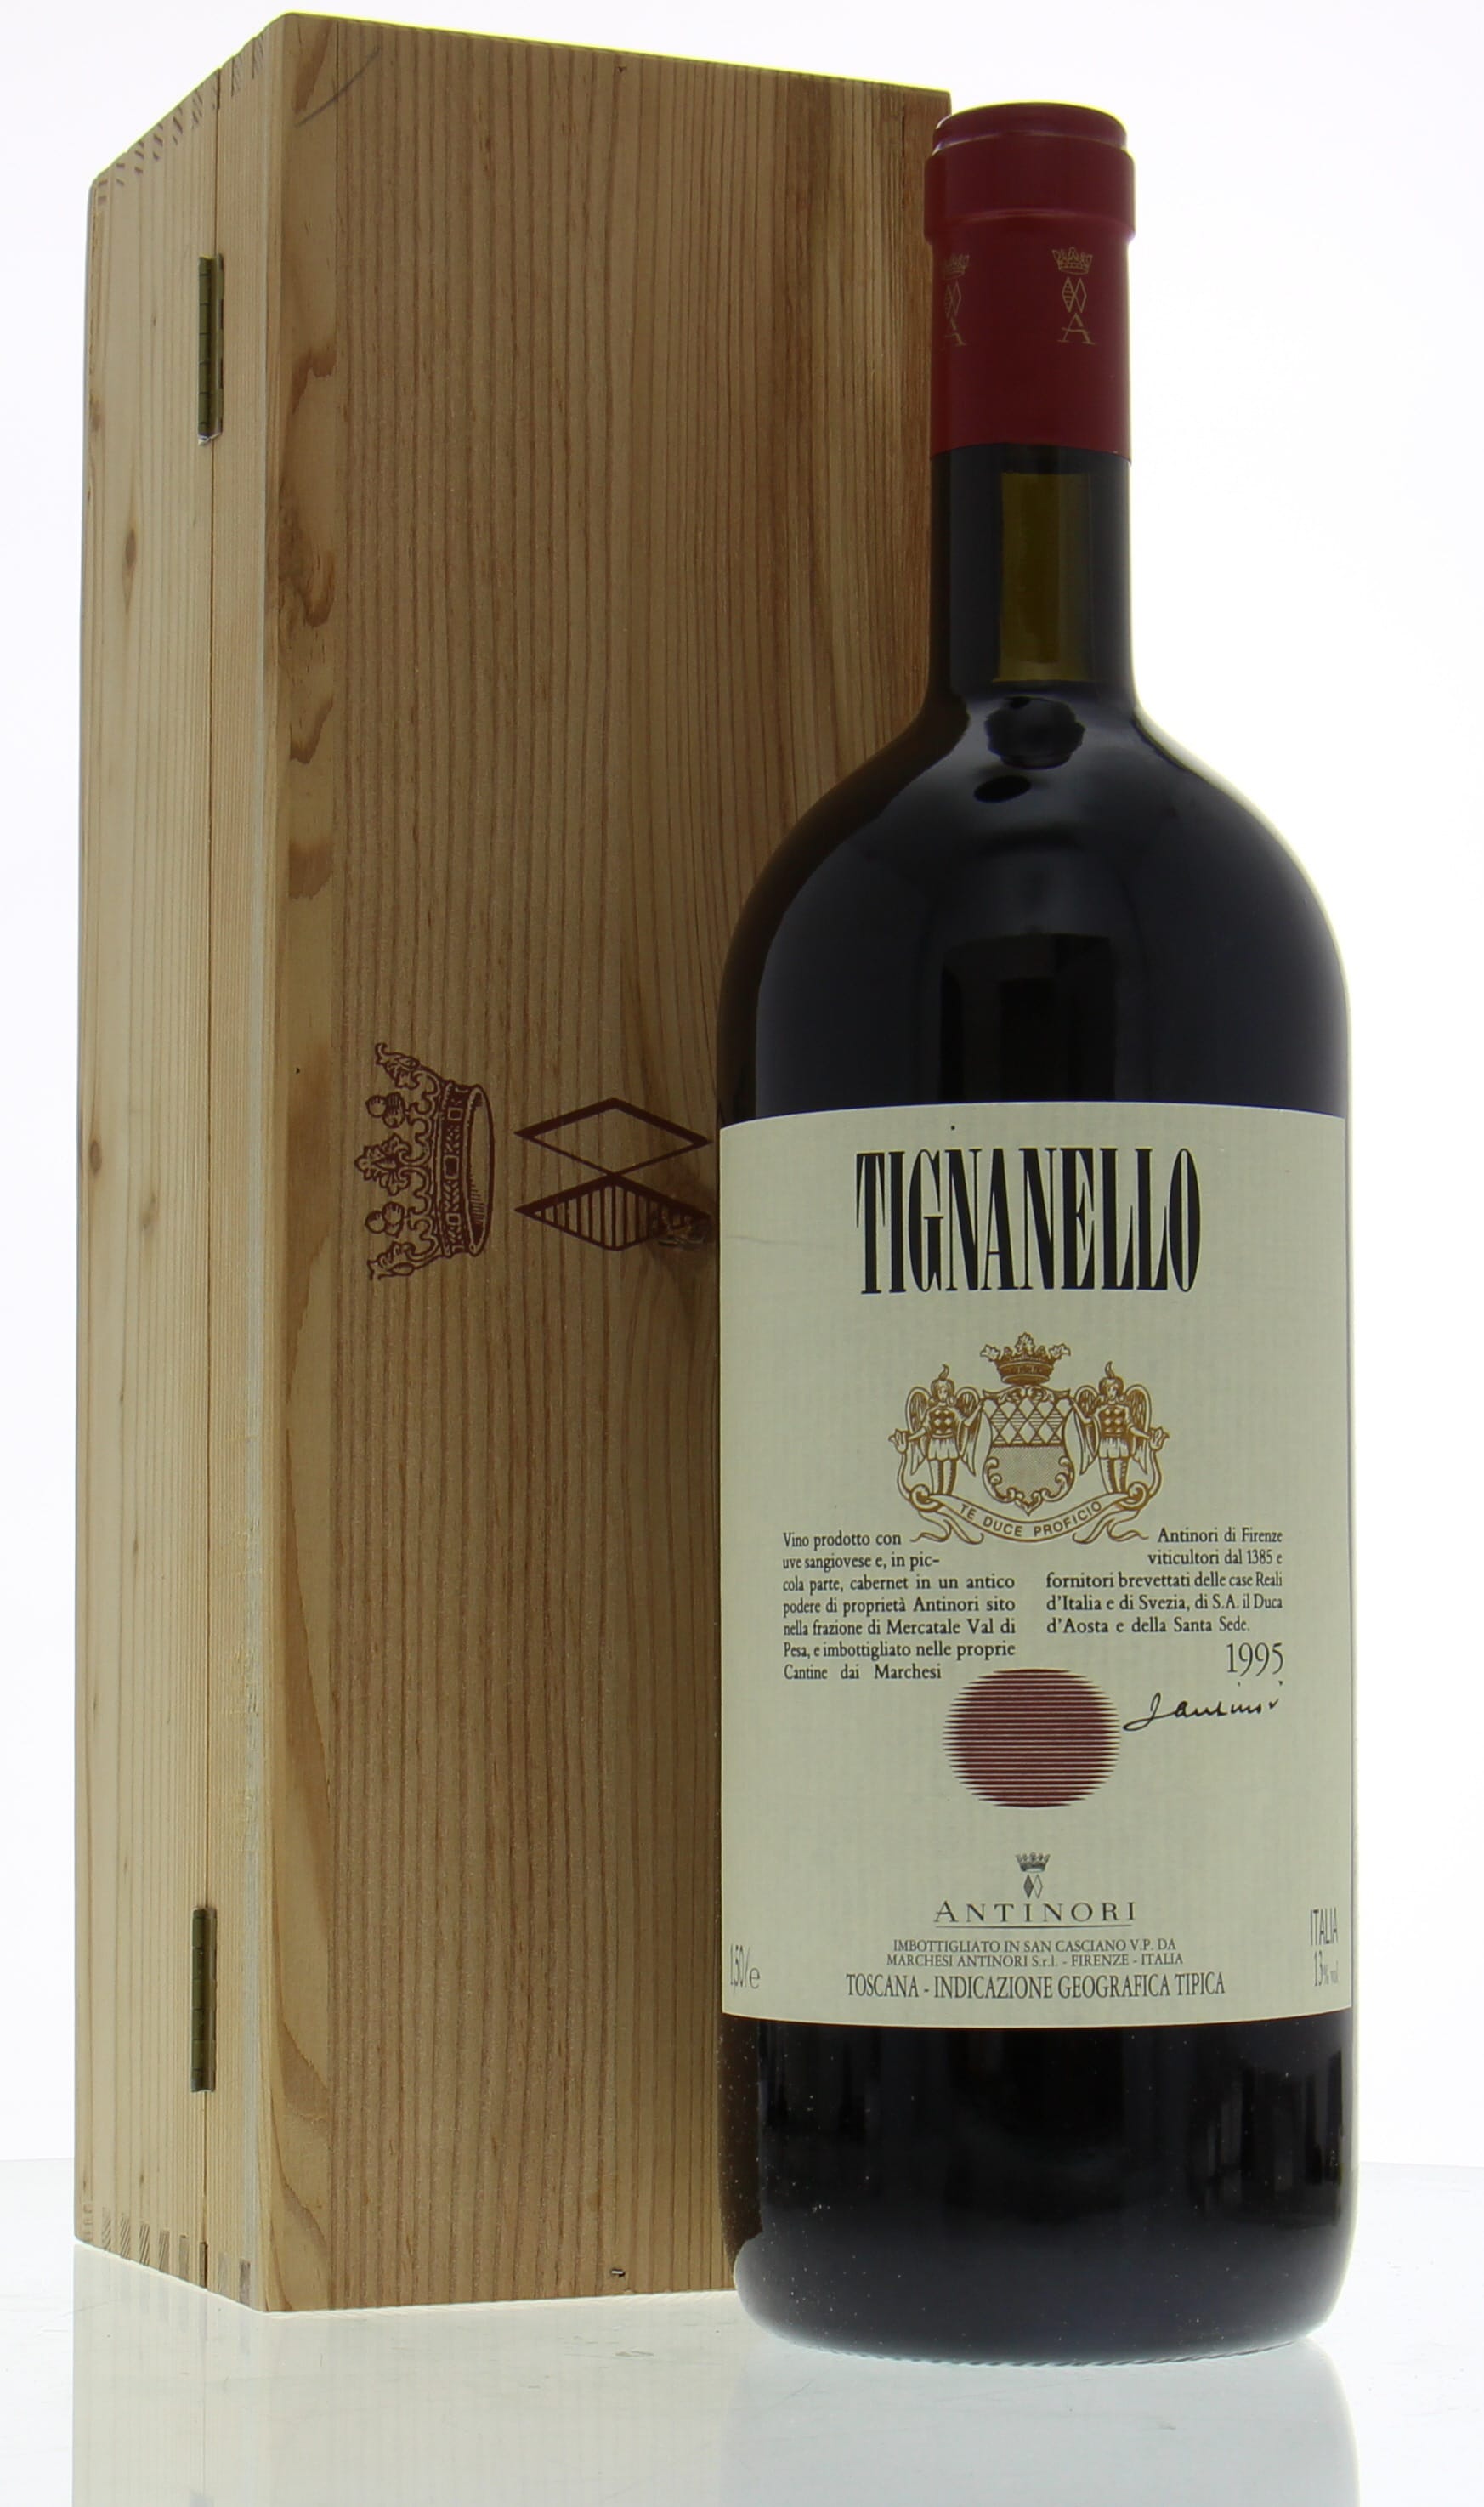 Antinori - Tignanello 1995 From Original Wooden Case